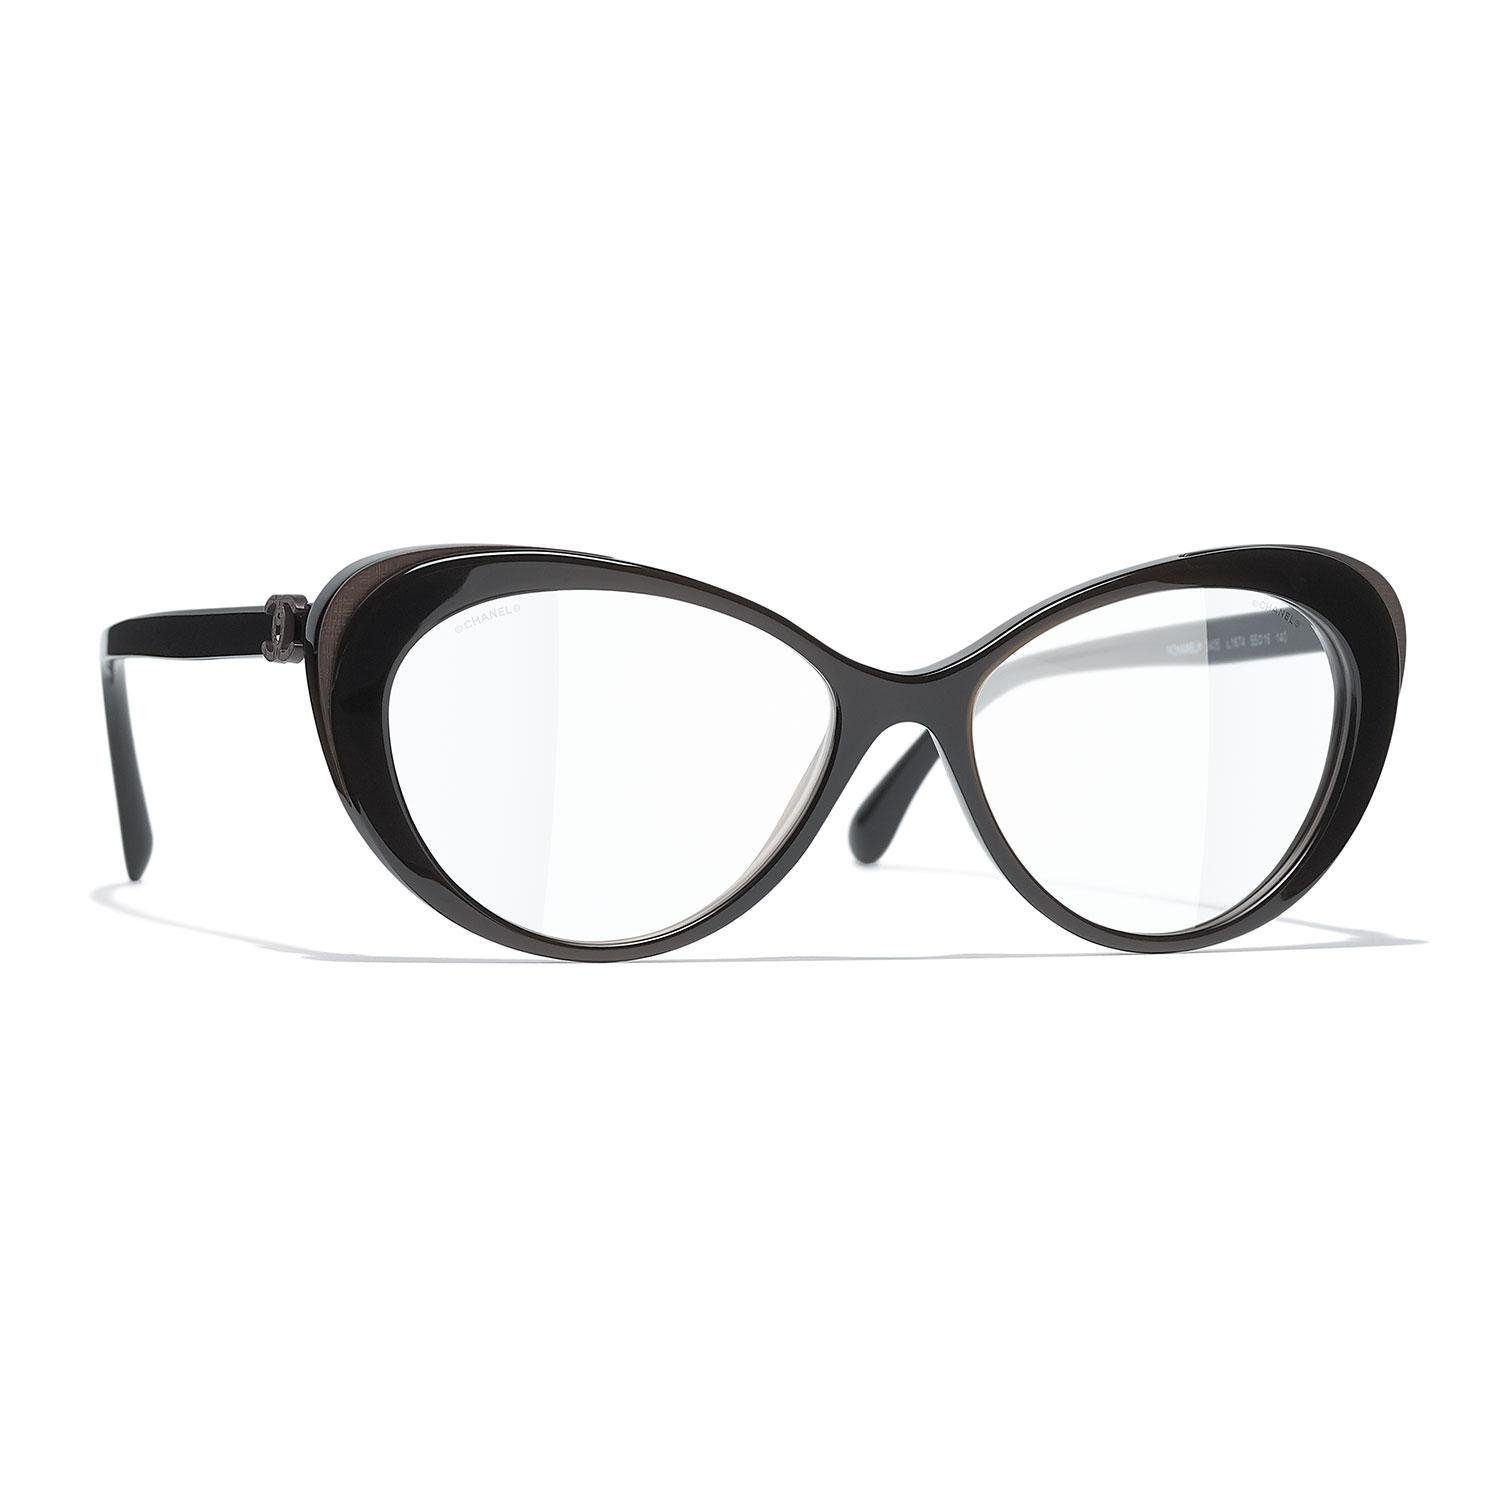 مجموعة أزياء شانيل - مجموعة نظارات خريف 2020 